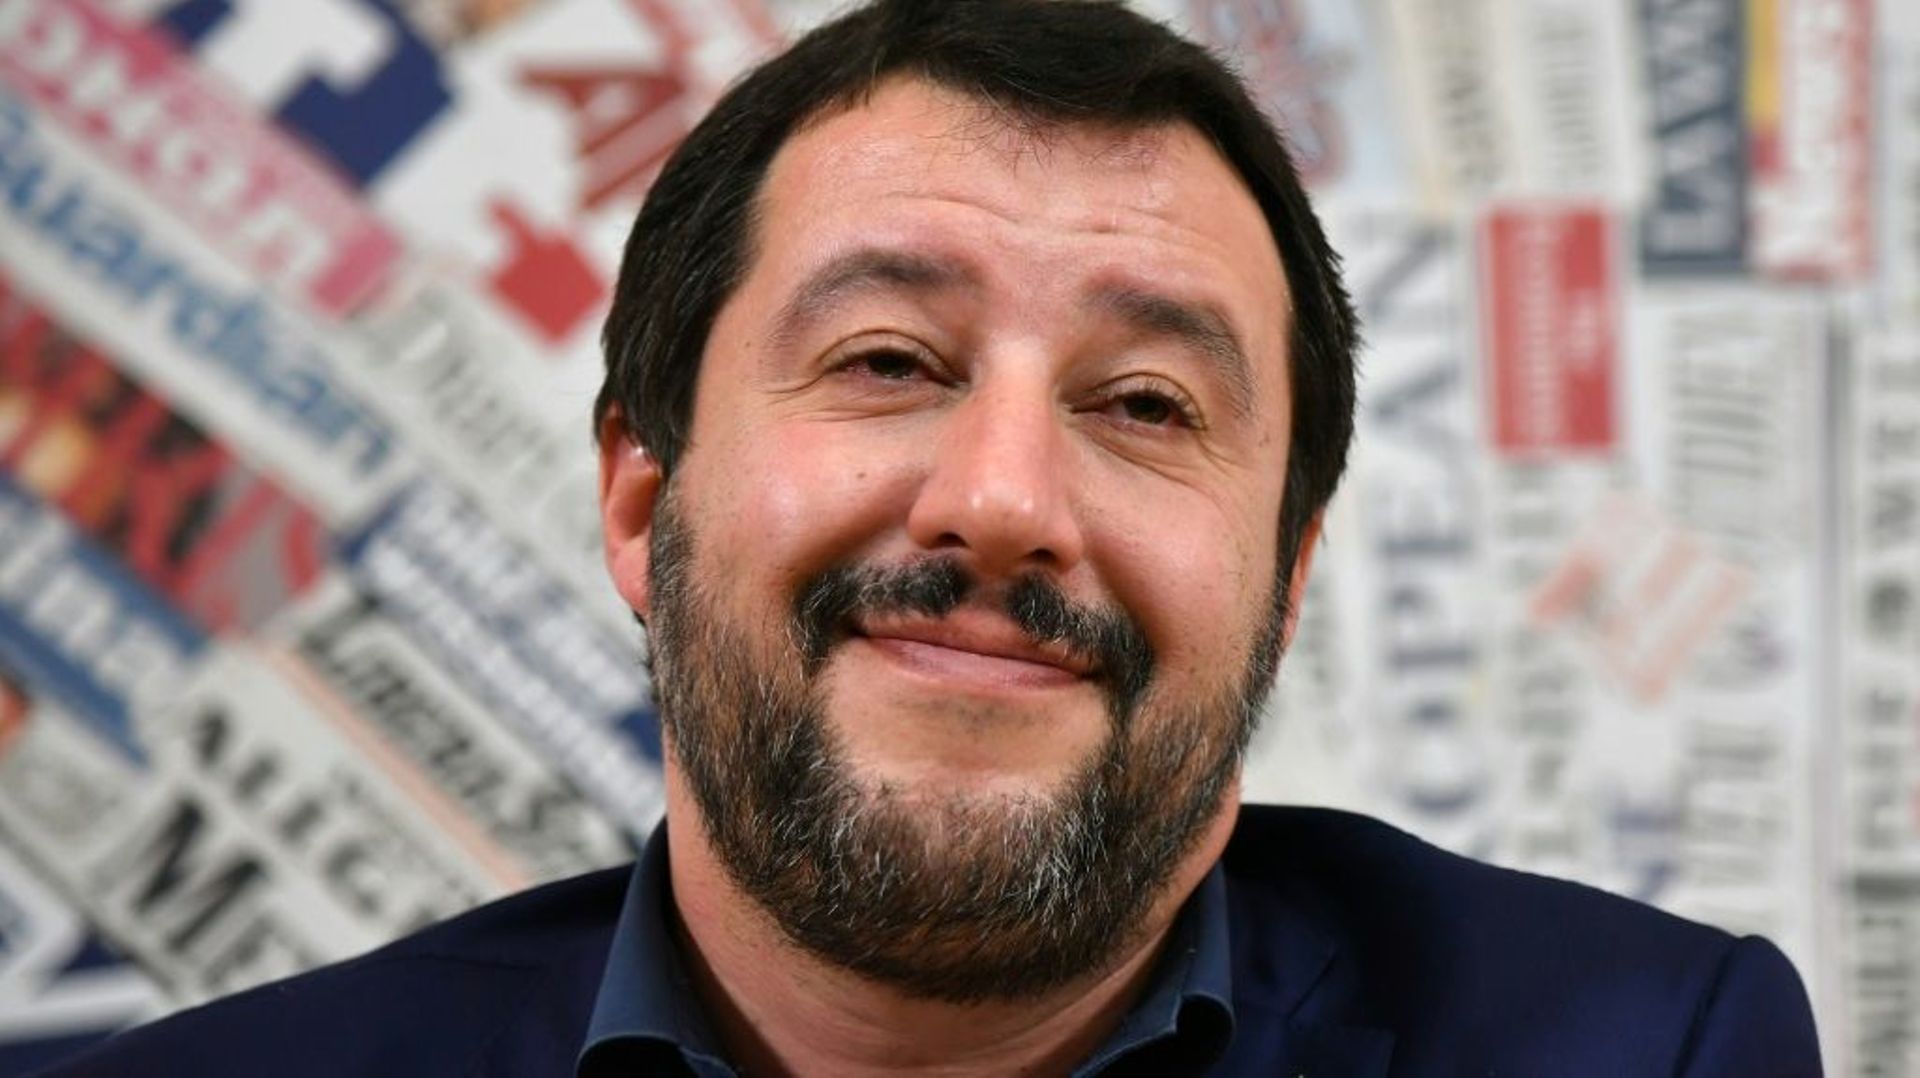 Italie: le chef de la Ligue Matteo Salvini exclut toute alliance avec la gauche